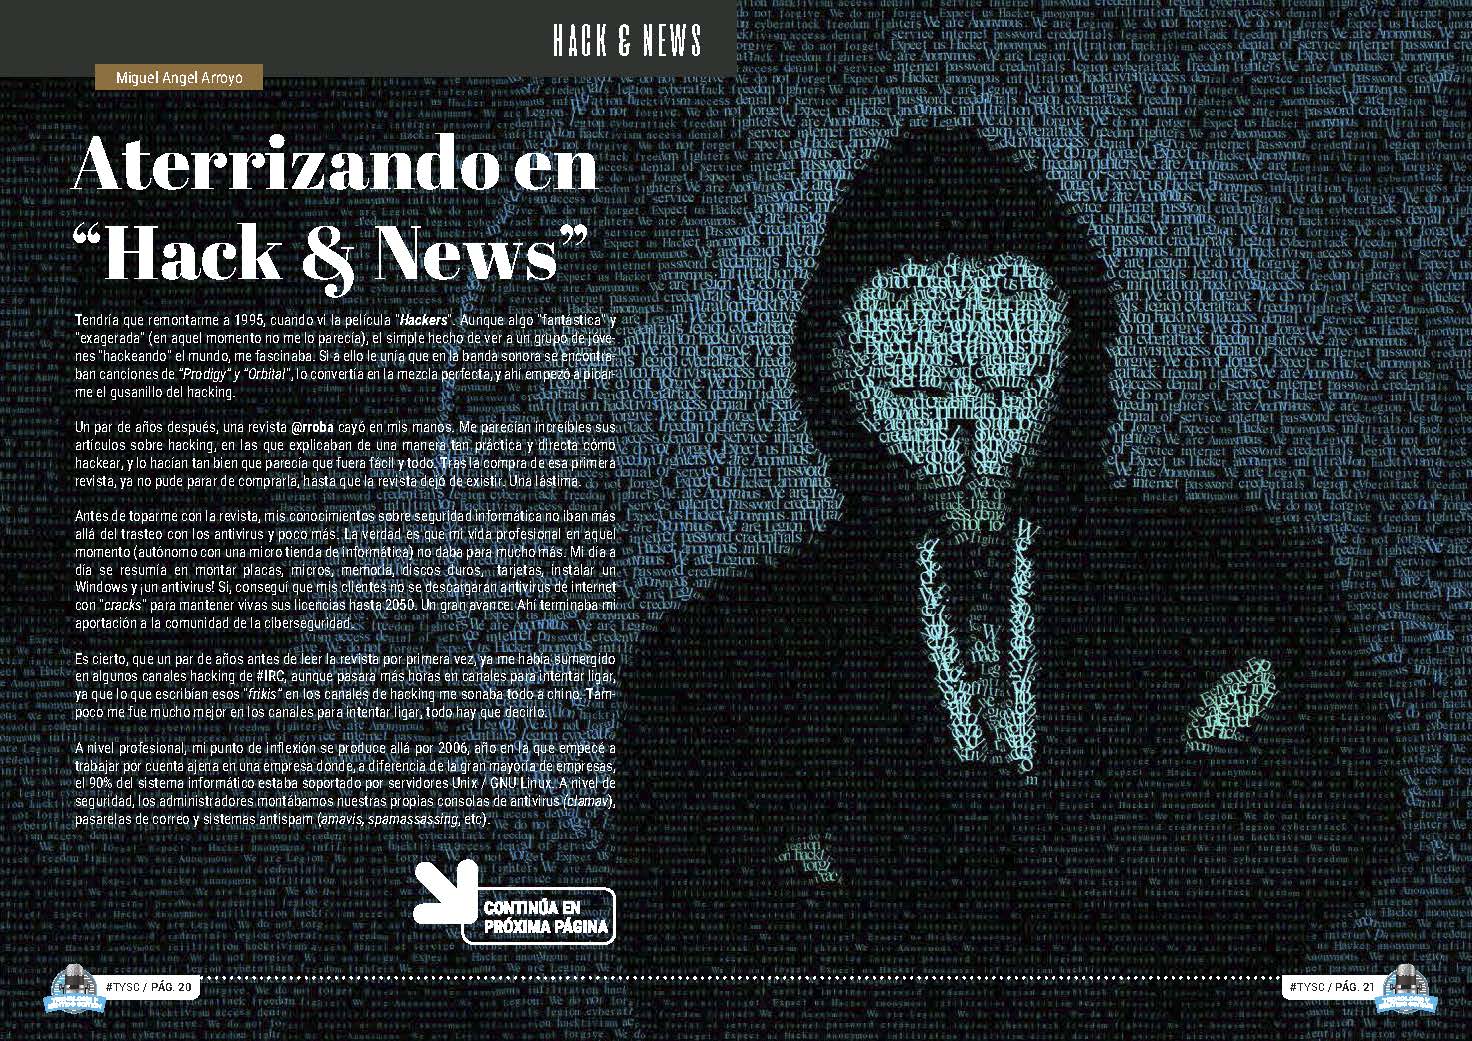 Artículo "Aterrizando en Hack & News" de Miguel Ánegl Arroyo Moreno en la Sección "Hack & News" de la Revista Tecnología y Sentido Común #TYSC